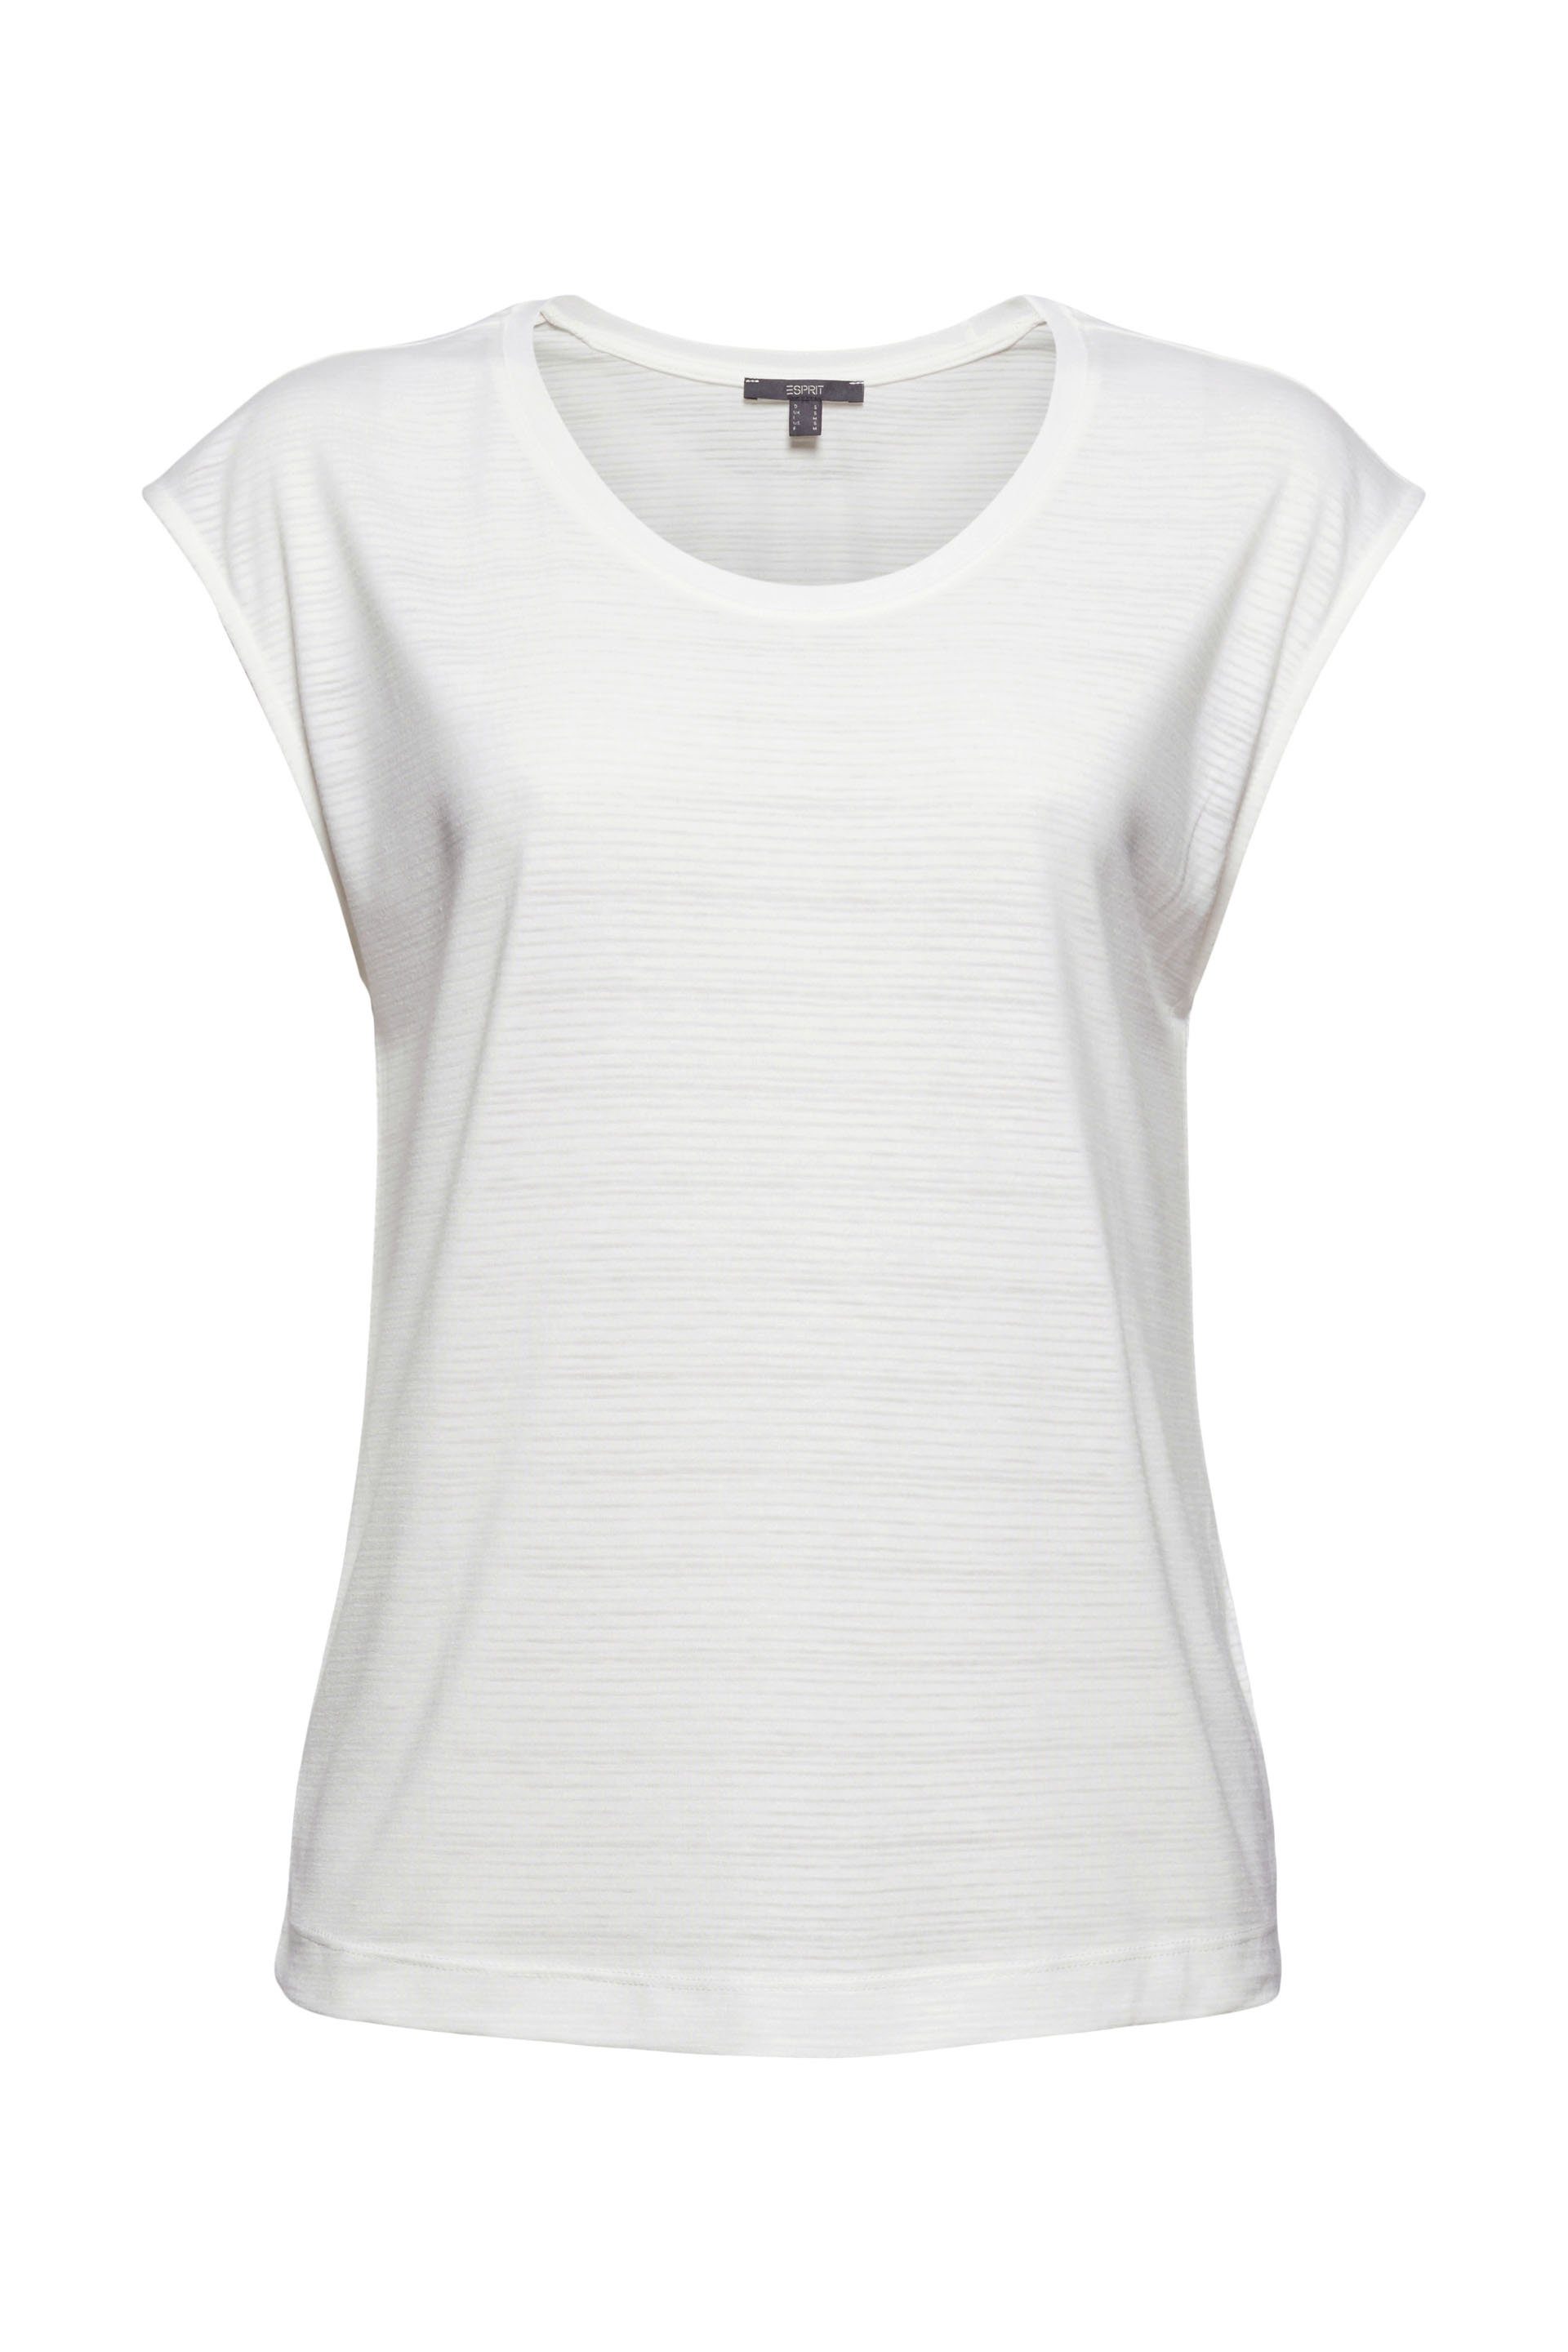 Esprit T-Shirt Shirt mit Ausbrenner-Muster